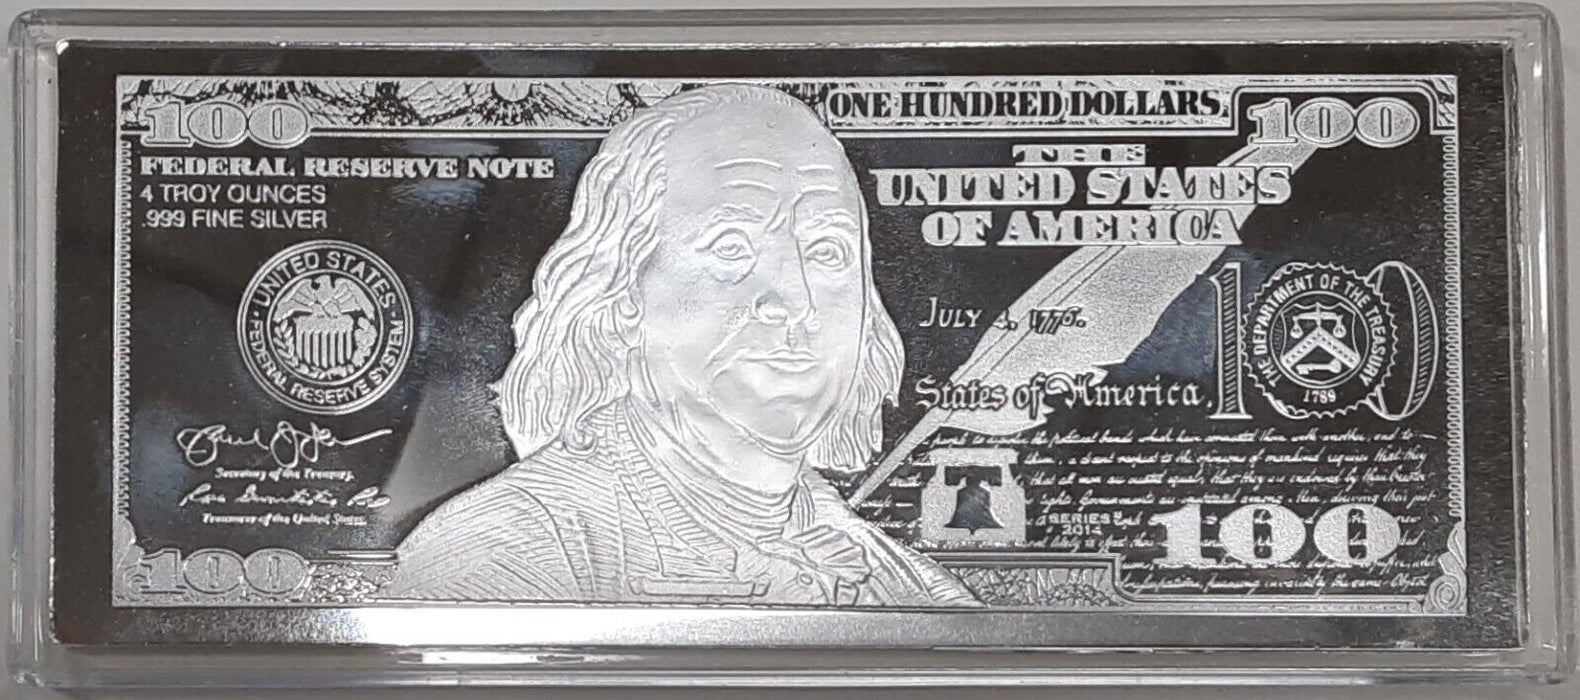 2014 $100 Note Design 4 Troy Oz .999 Silver Ingot-Proof-Like in Plastic Case